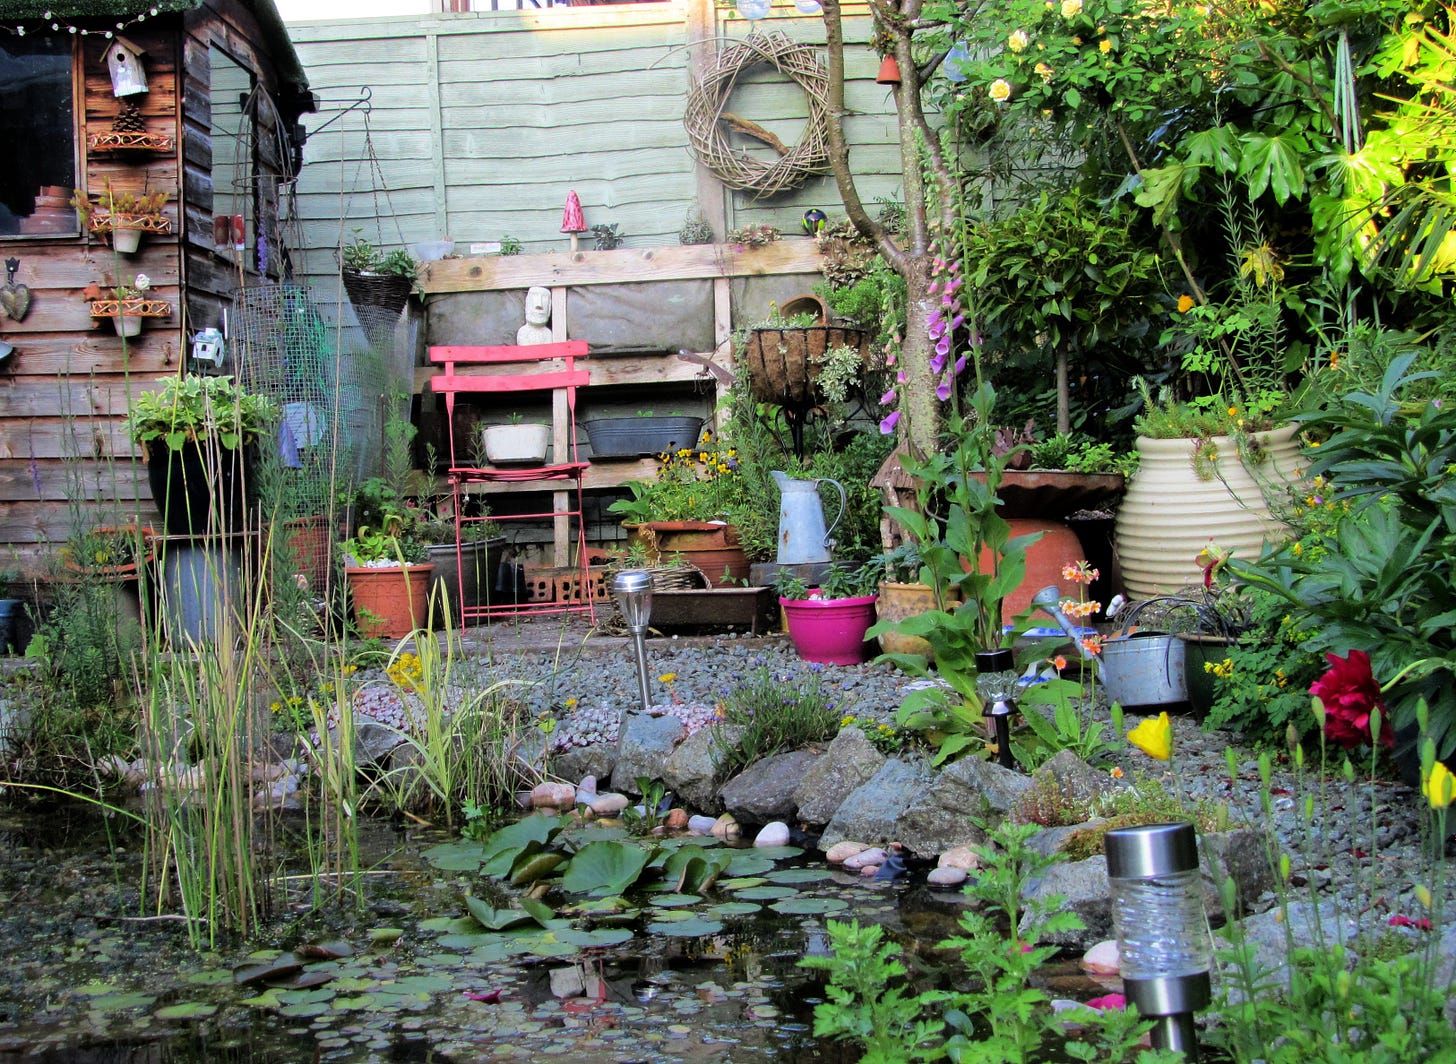 Garden pond. Credit: Scrappy Annie, Flickr.